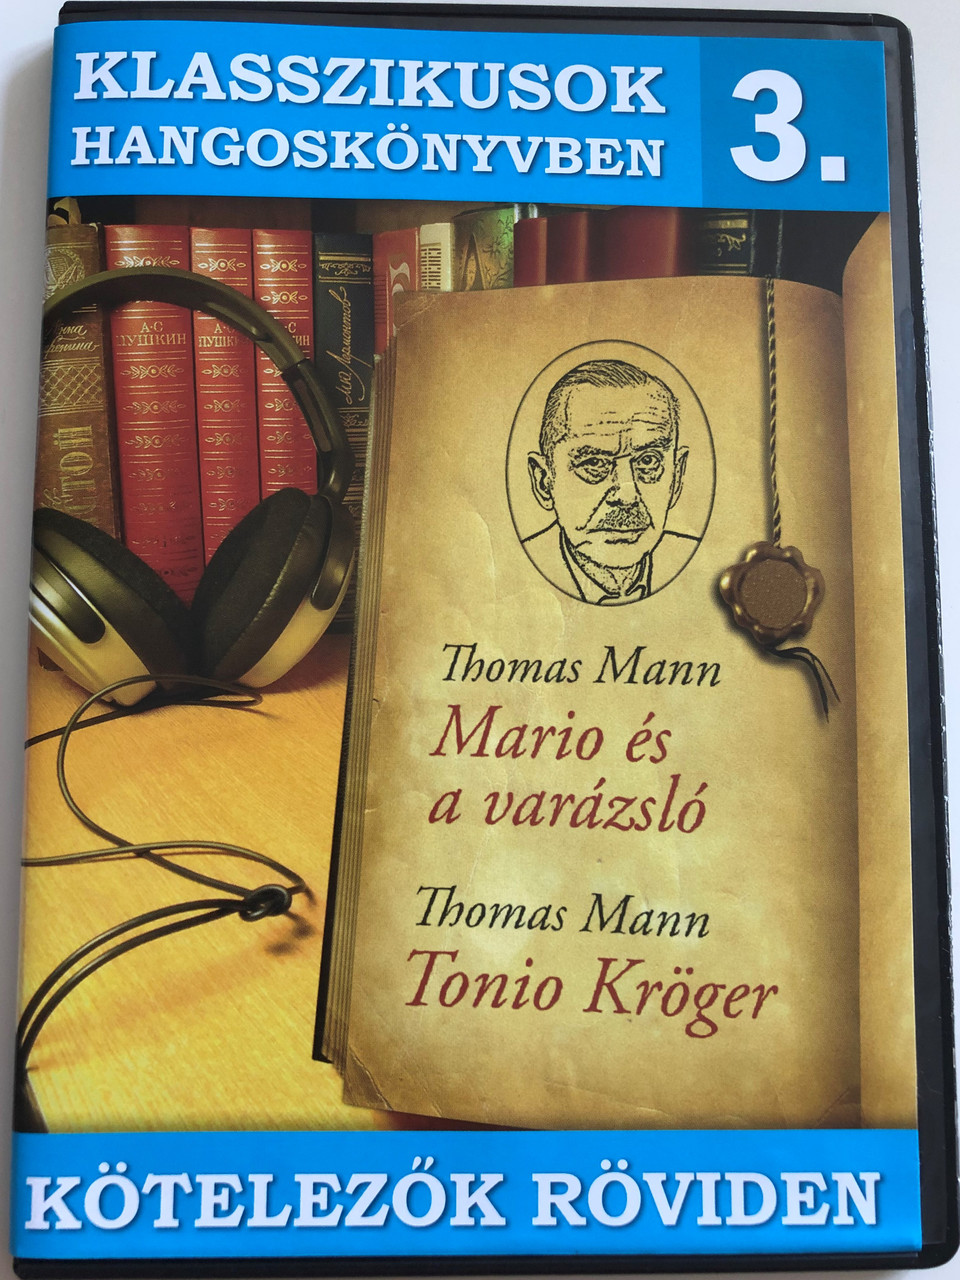 Klasszikusok Hangoskönyvben 3. / Thomass Mann: Mario és a varázsló, Tonio  Kröger / Kötelezők röviden / Classic Writers in Audio 3. / Hungarian Audio  Book / Audio CD 2009 / ERCD 9003 - bibleinmylanguage